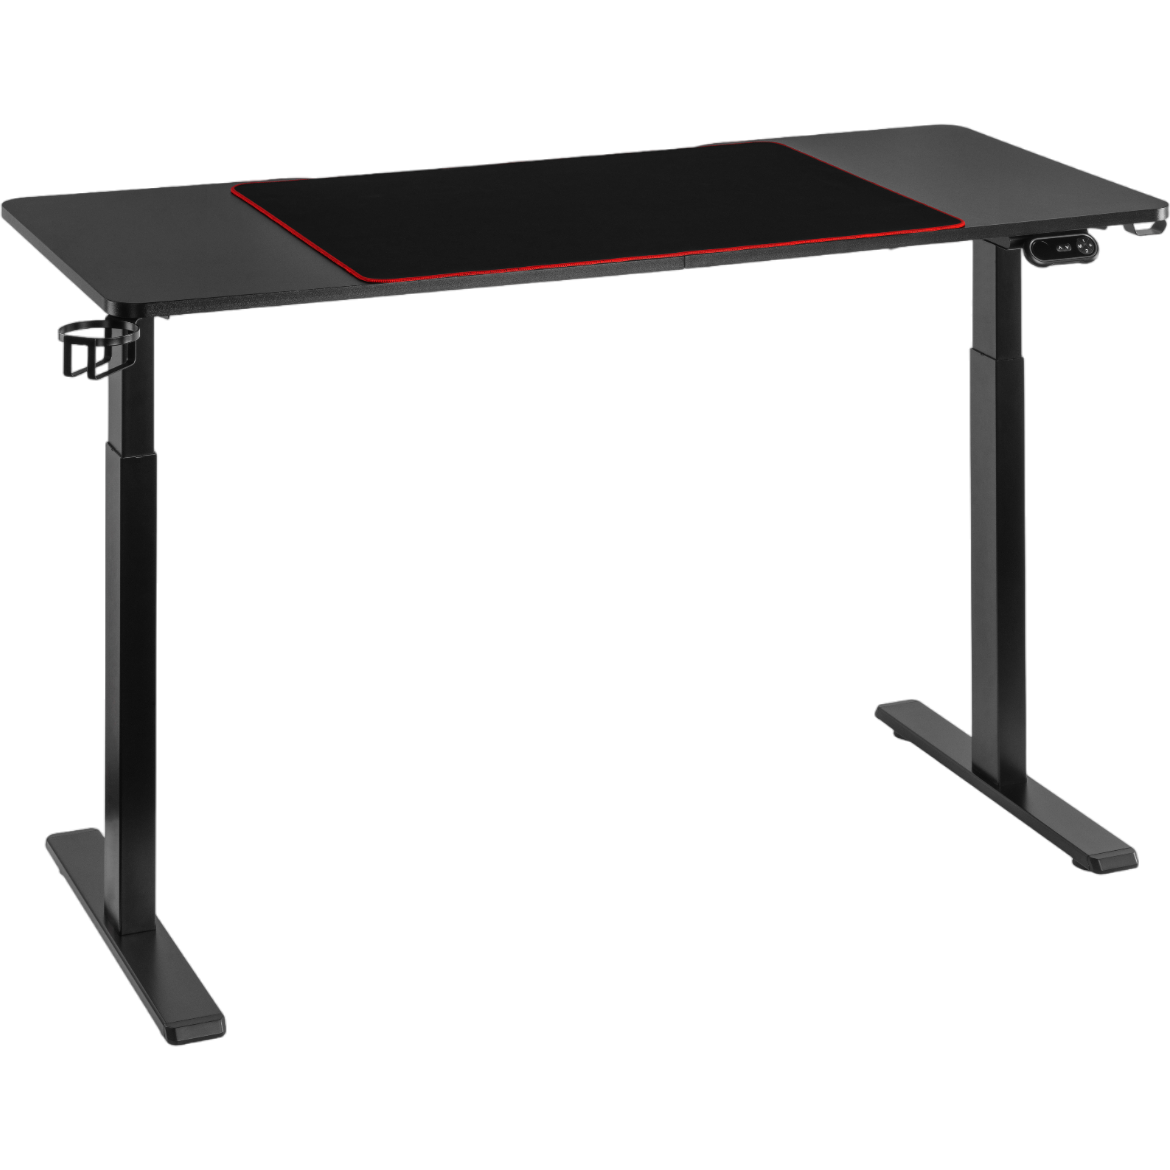 Комп'ютерний стіл OfficePro з електрорегулюванням висоти чорний (ODE714) - фото 1